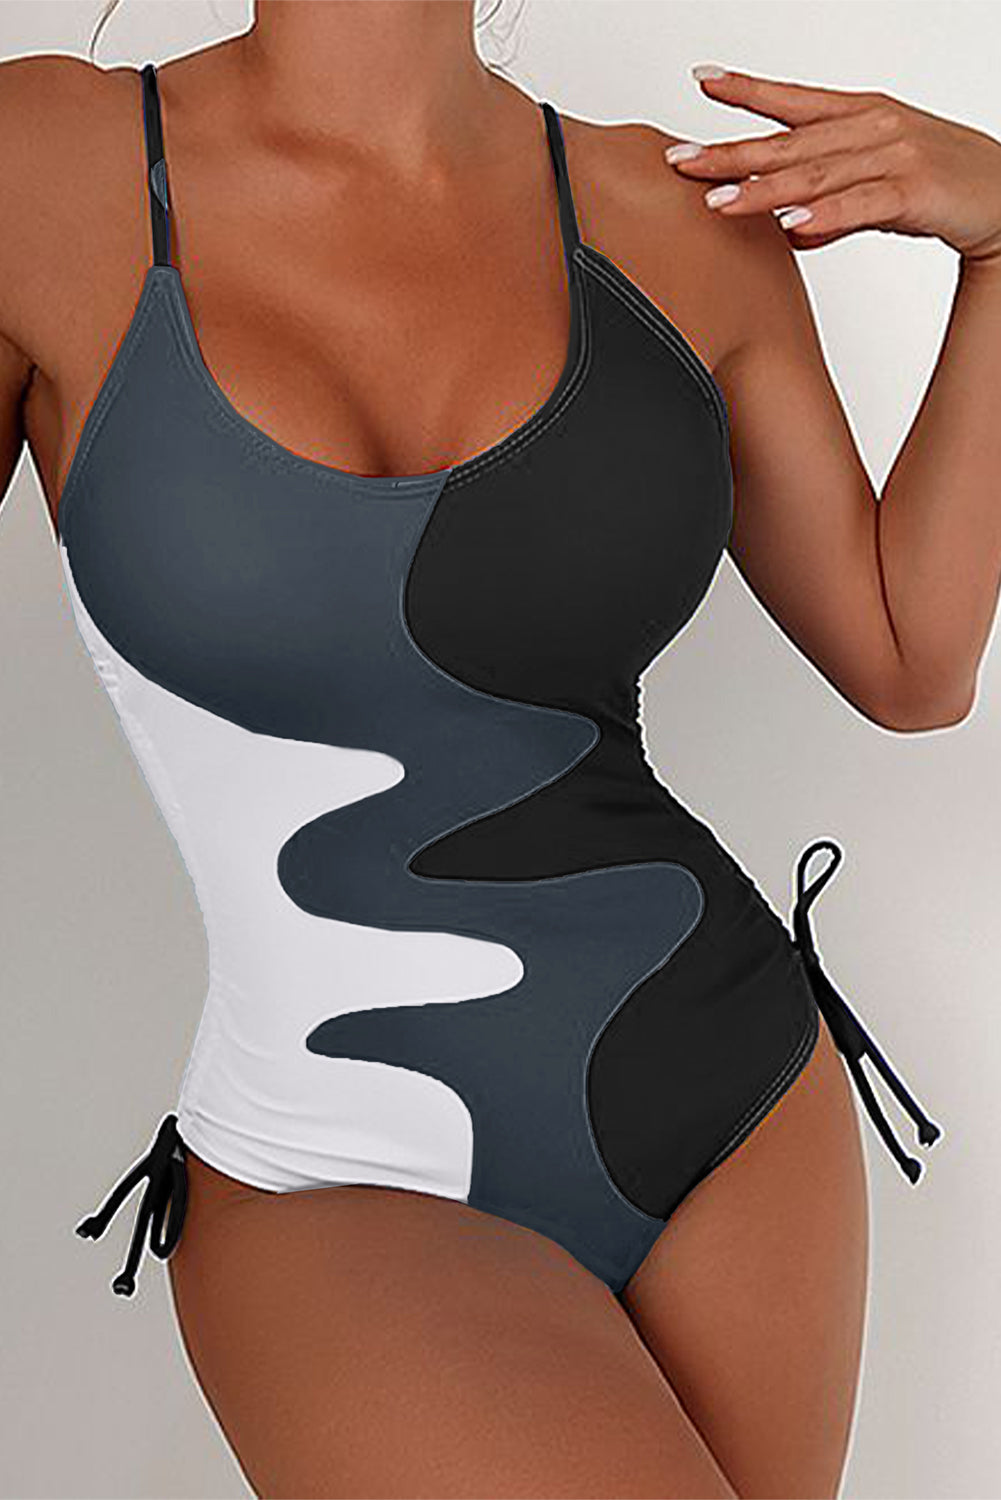 Schwarzer, bedruckter Badeanzug mit Kordelzug an den Seiten und Farbblockdesign